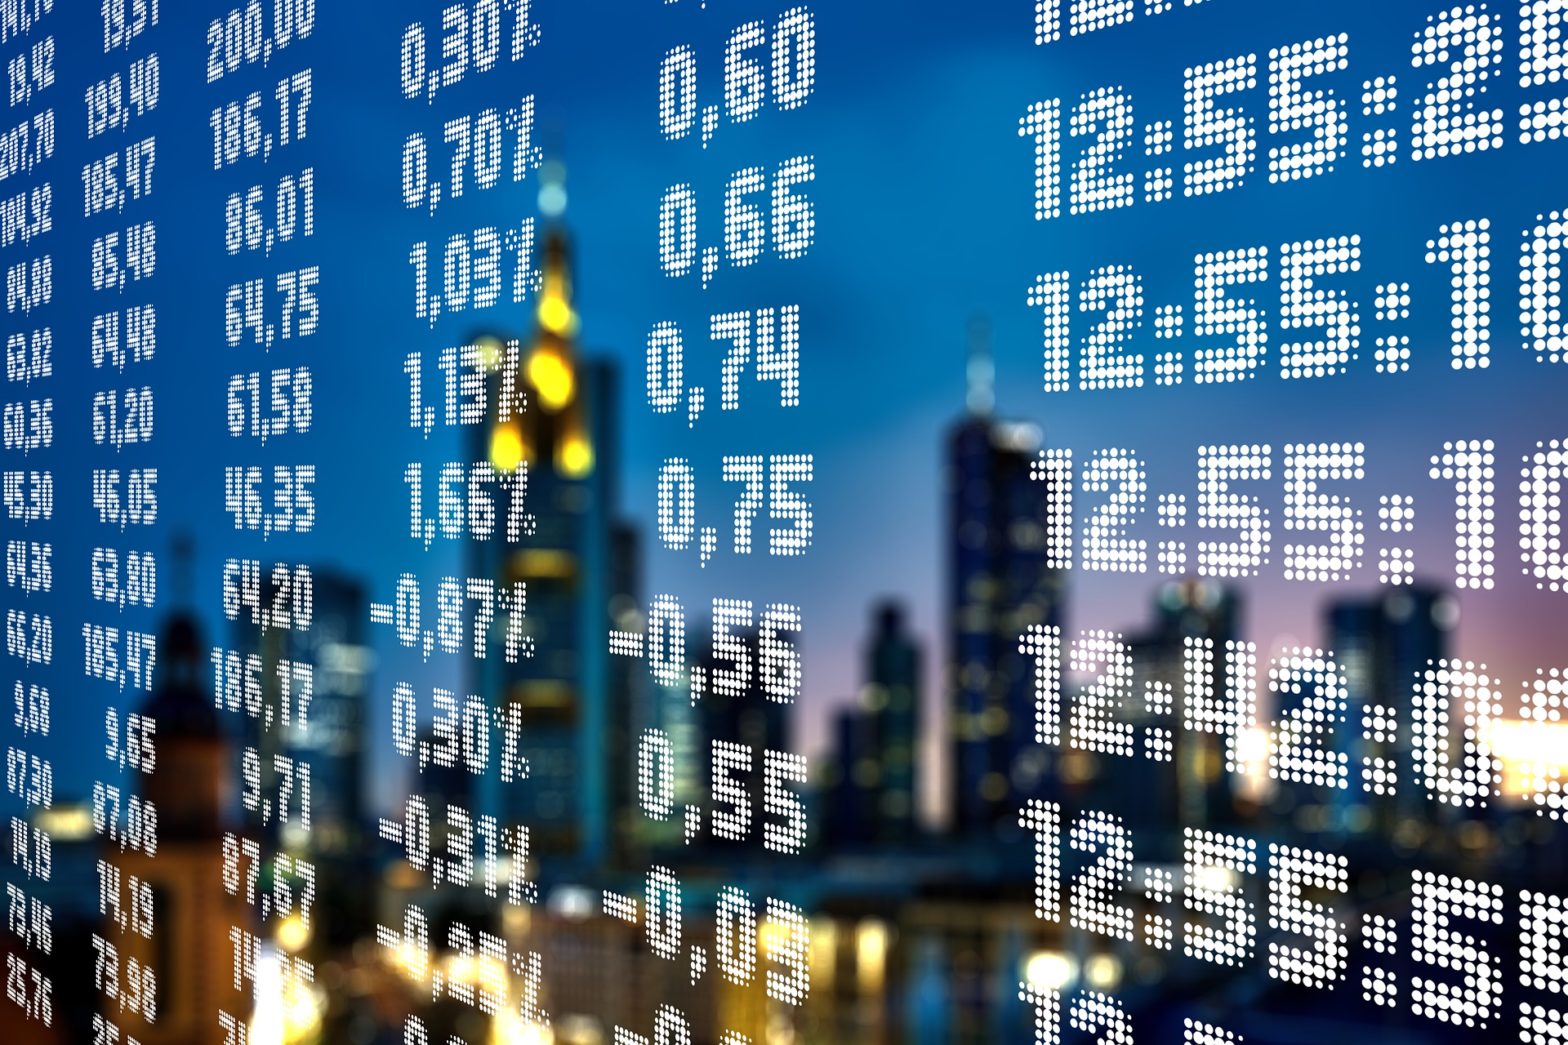 Börsenkurse im Display mit Wolkenkratzern im Hintergrund